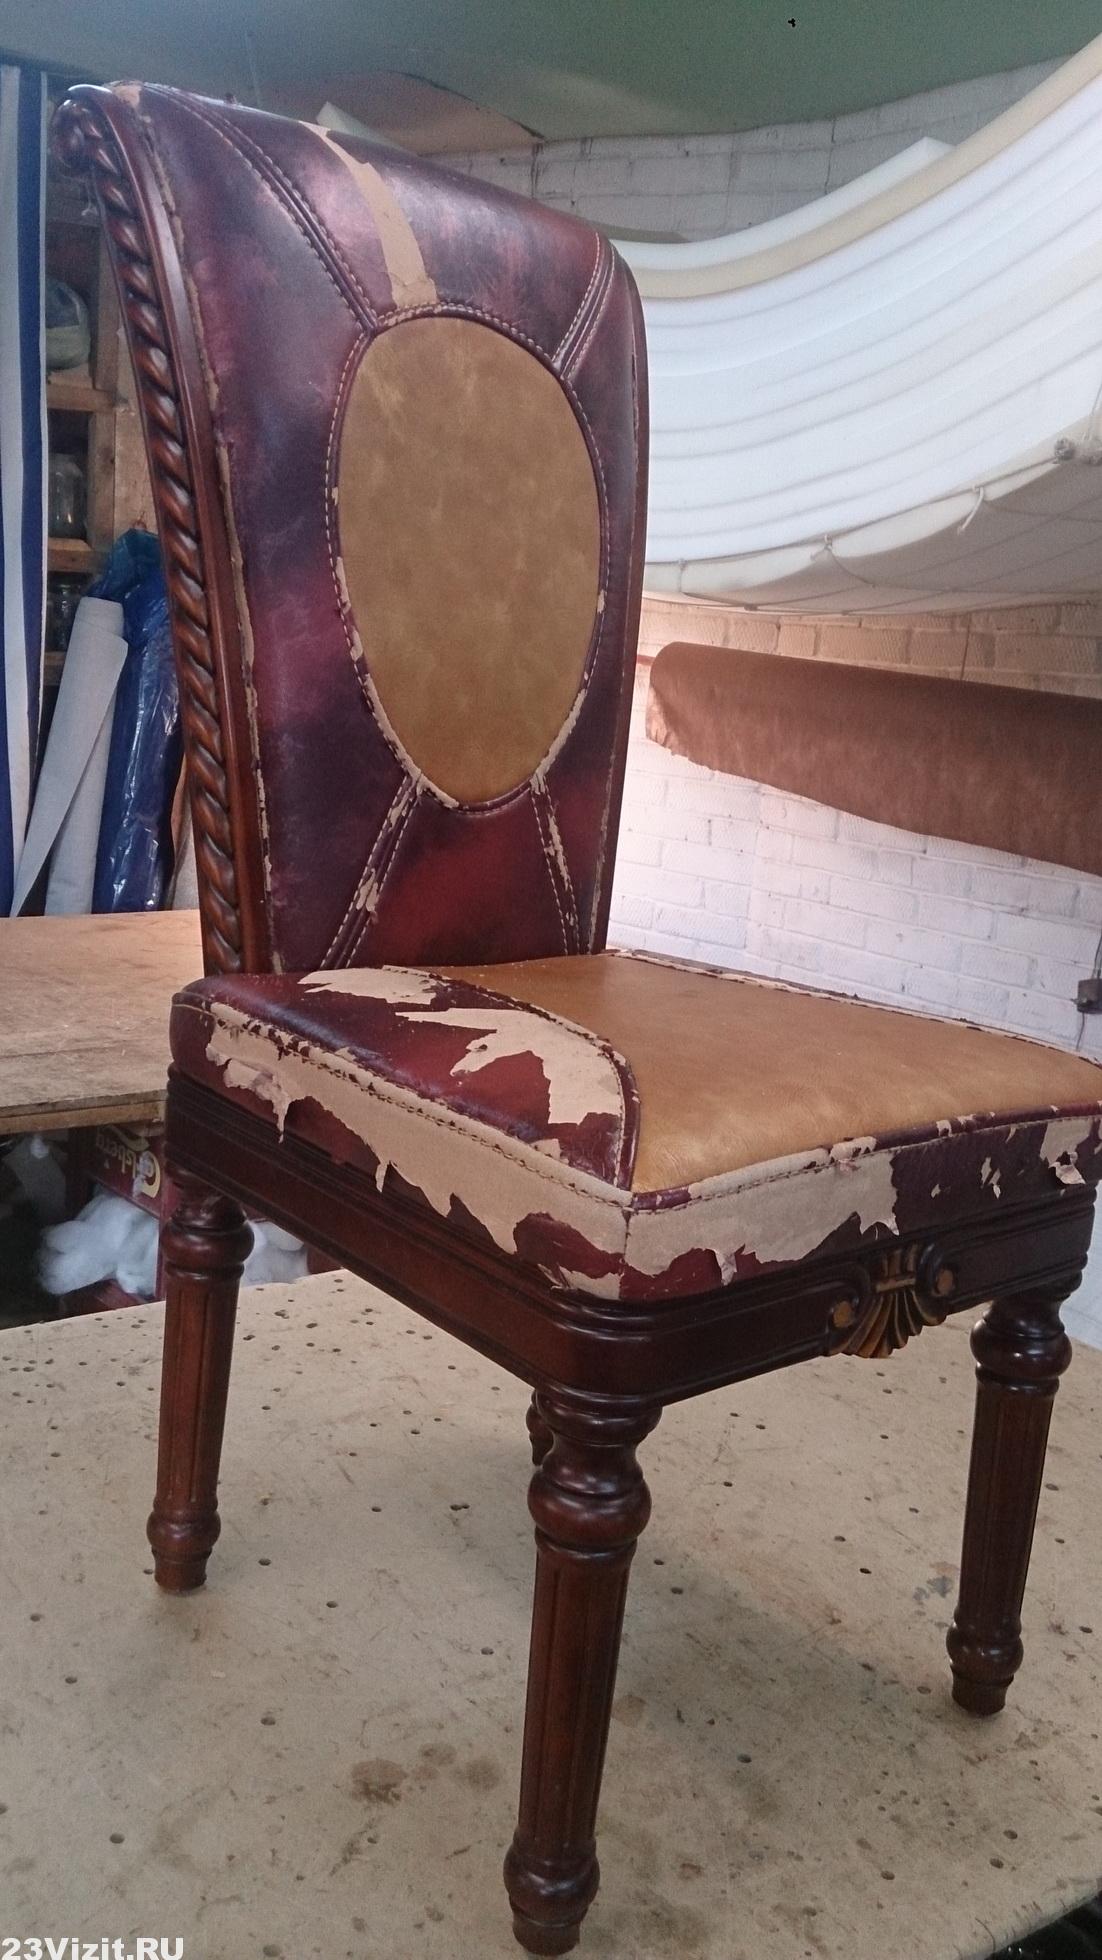 Реставрация стула в Краснодаре